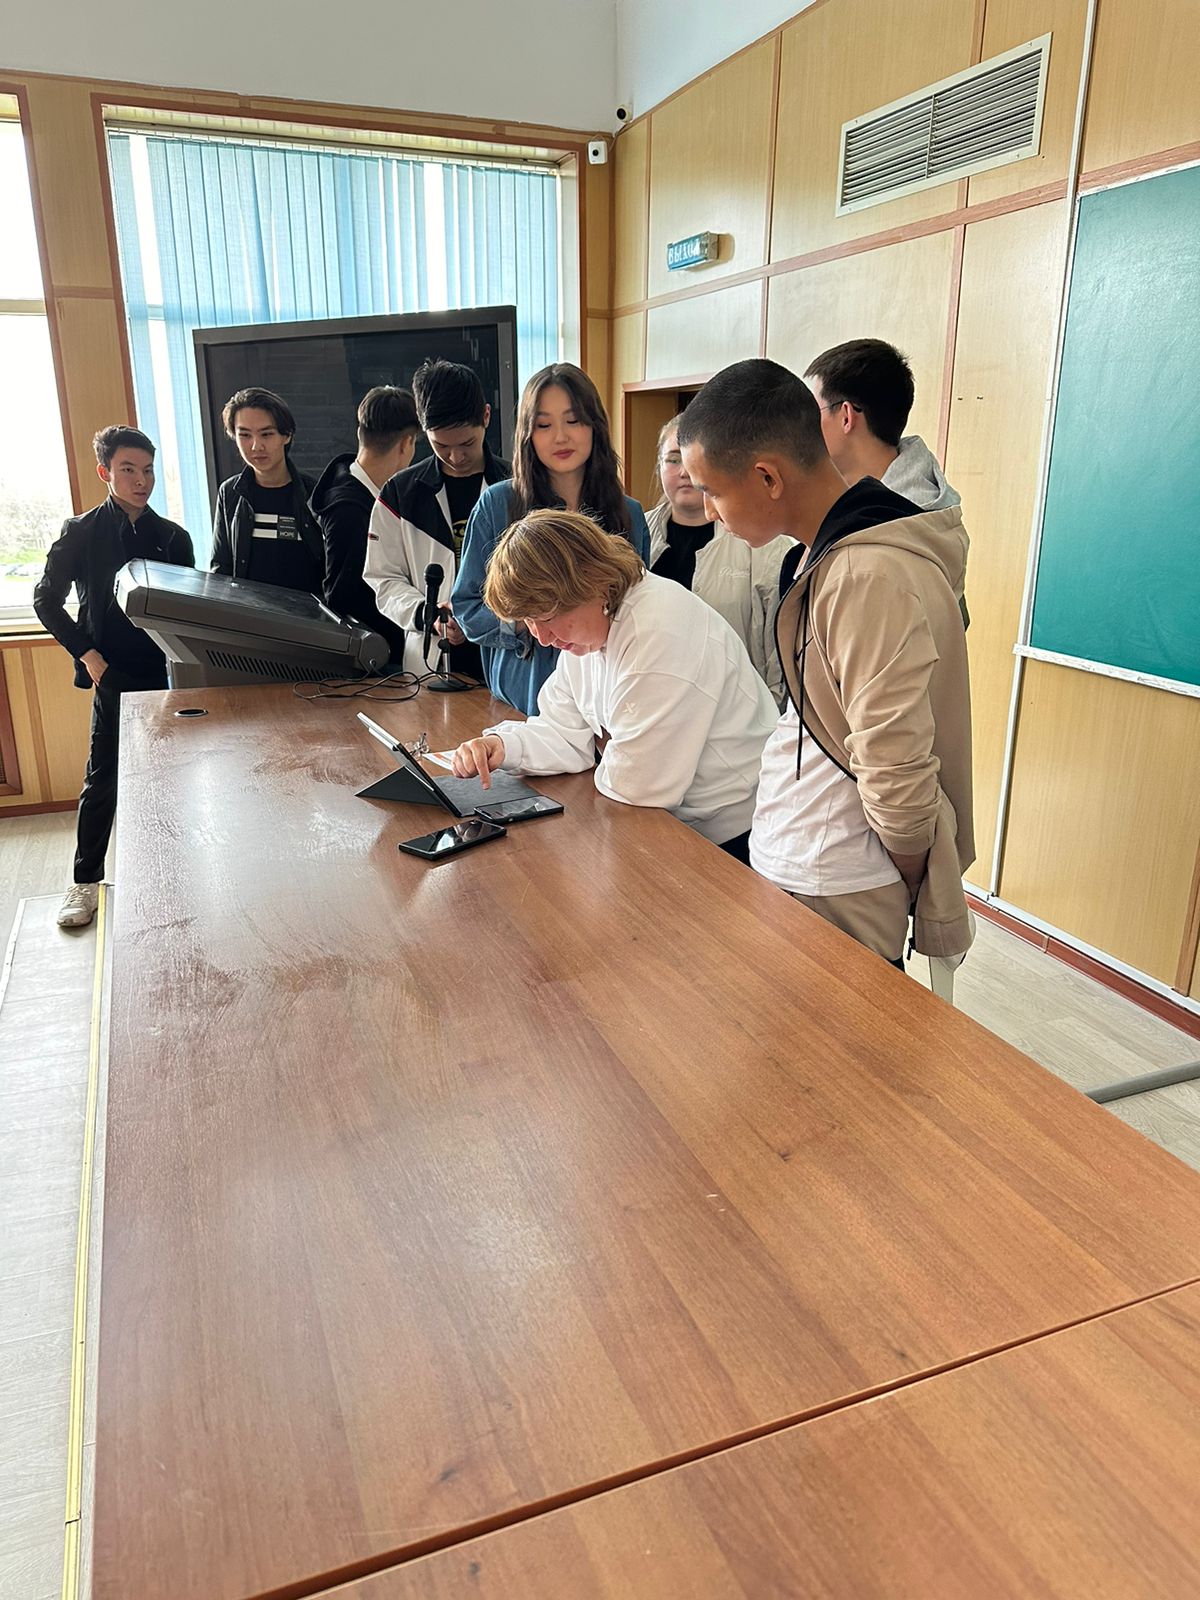 Представители "Отбасы банка" встретились со студентами КазНУ